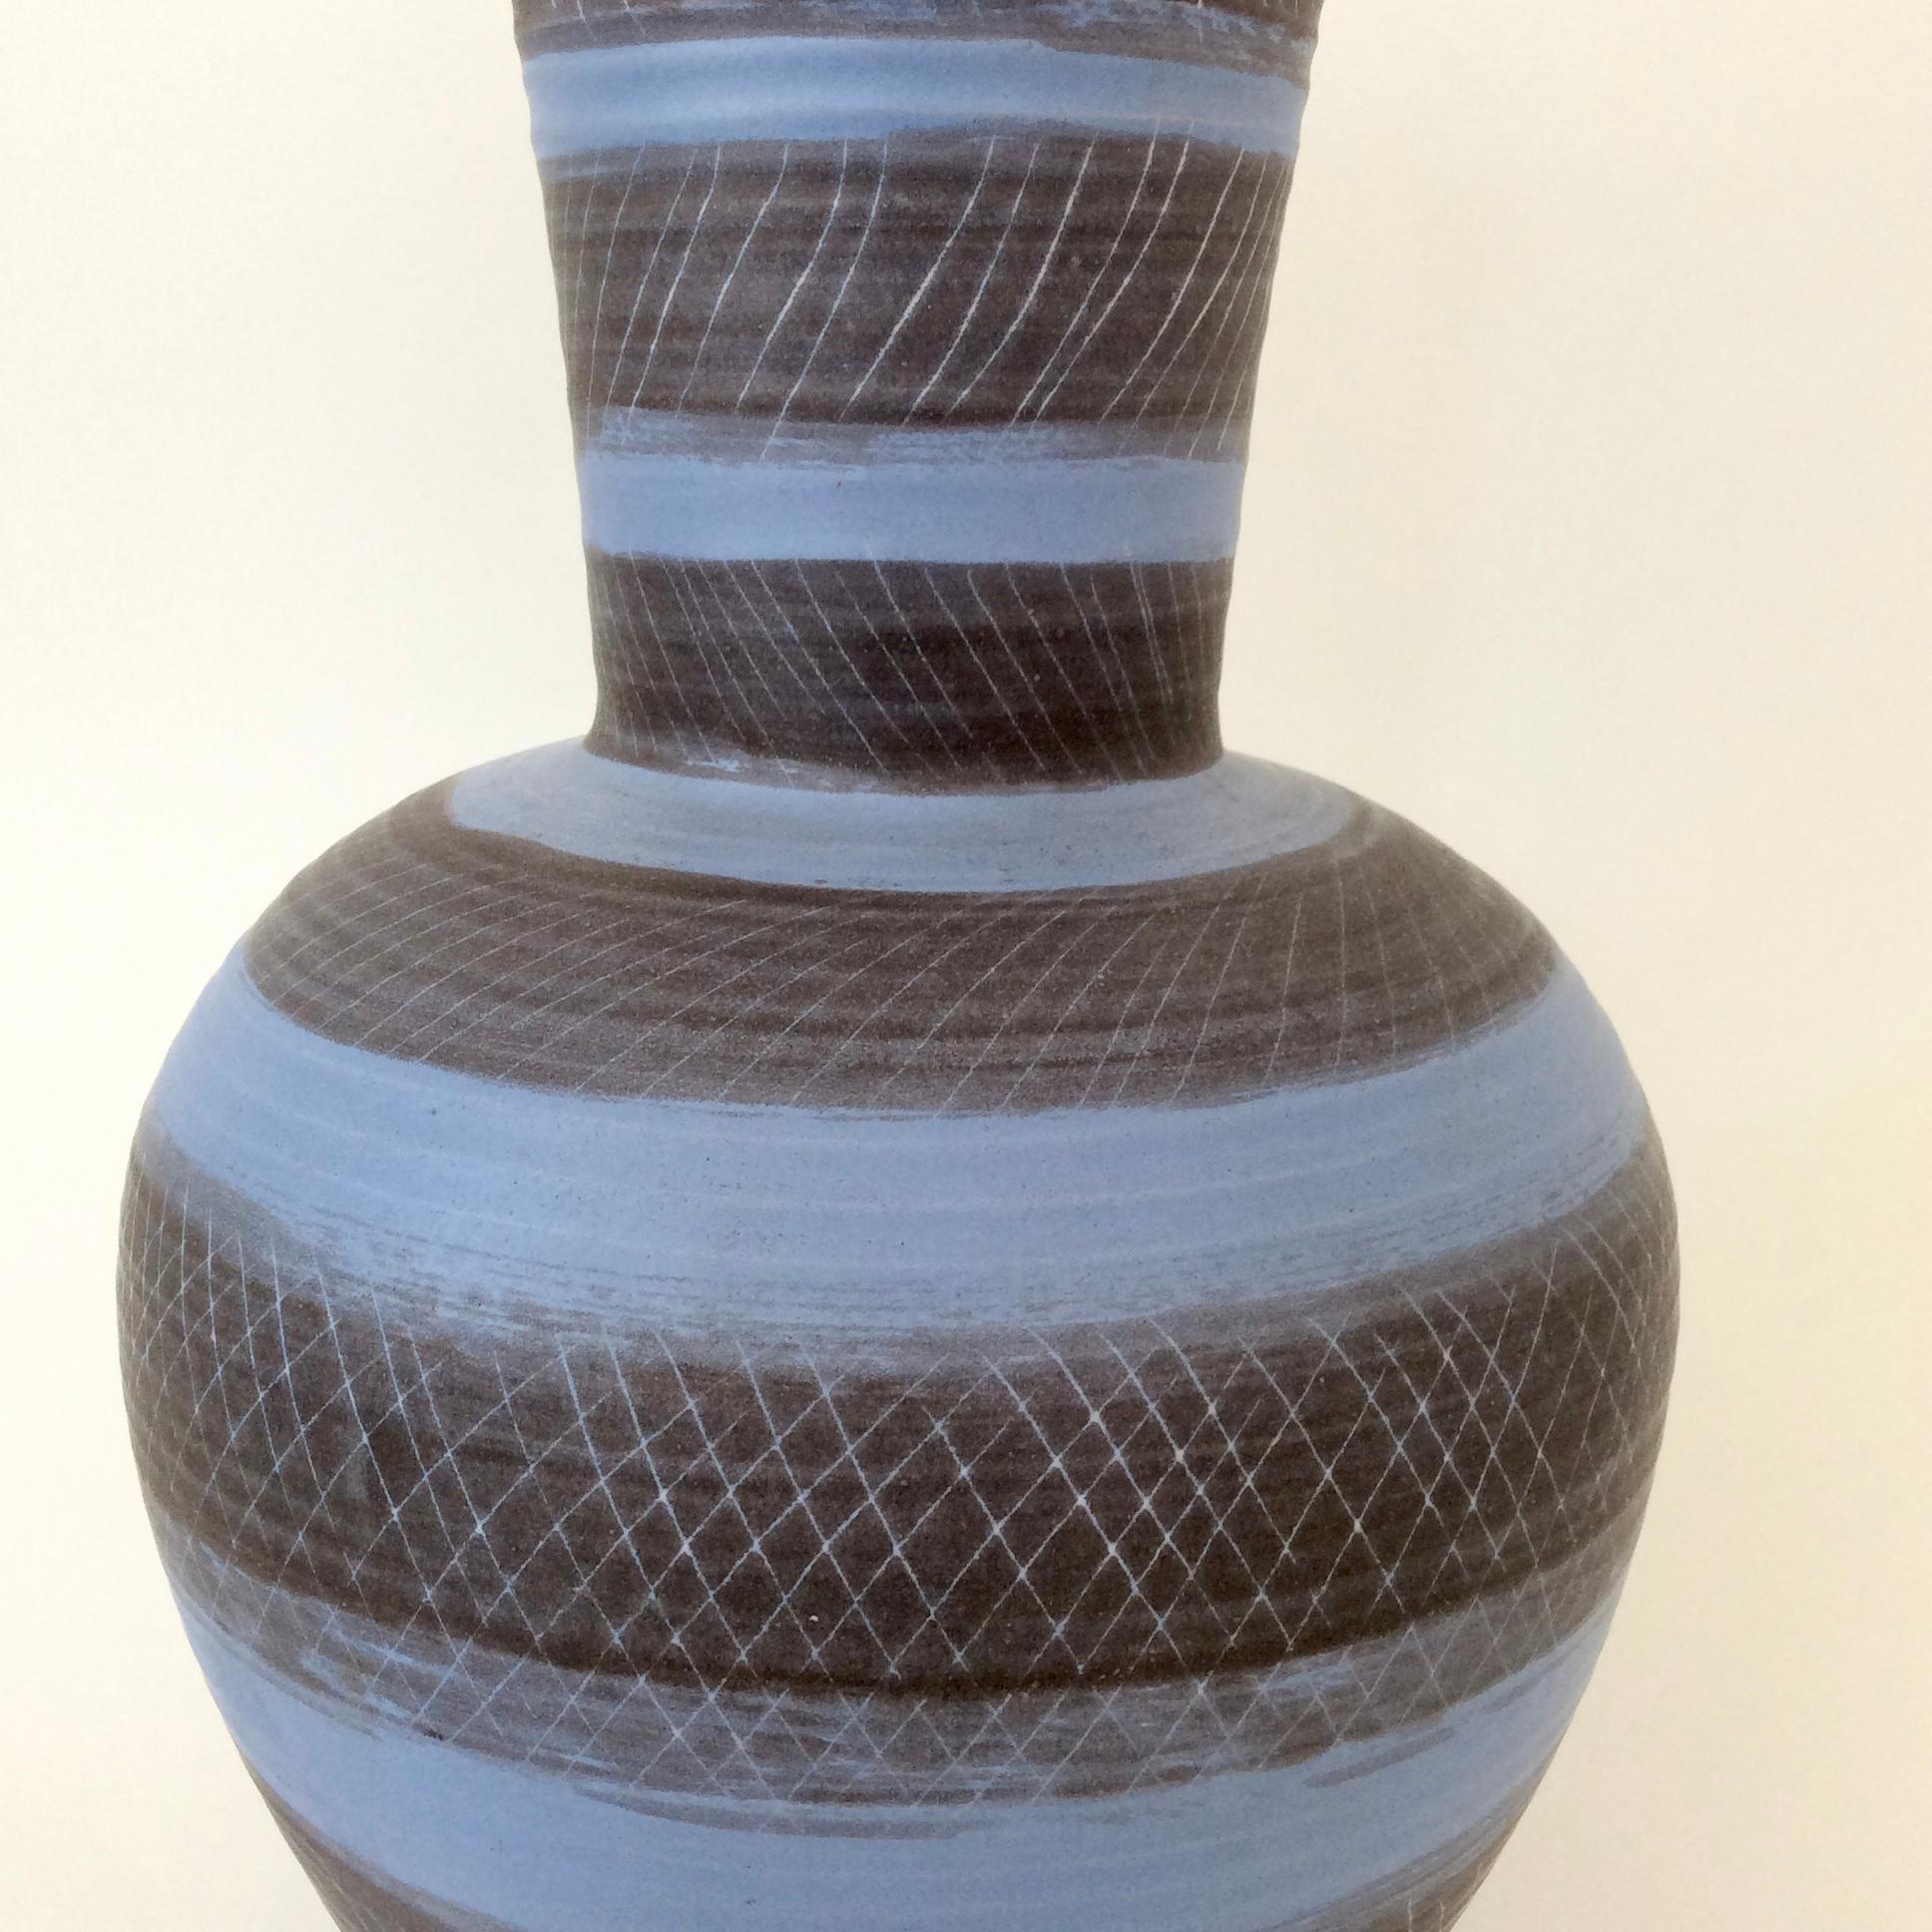 Seltene Vase von Marcel Guillot, um 1950, Frankreich.
Blau leuchtende und schwarze Keramik.
Darunter unterschrieben.
Abmessungen: 36 cm Höhe, Durchmesser 23 cm.
Guter Zustand.
 Alle Käufe sind durch unsere Käuferschutzgarantie abgedeckt.
Dieser